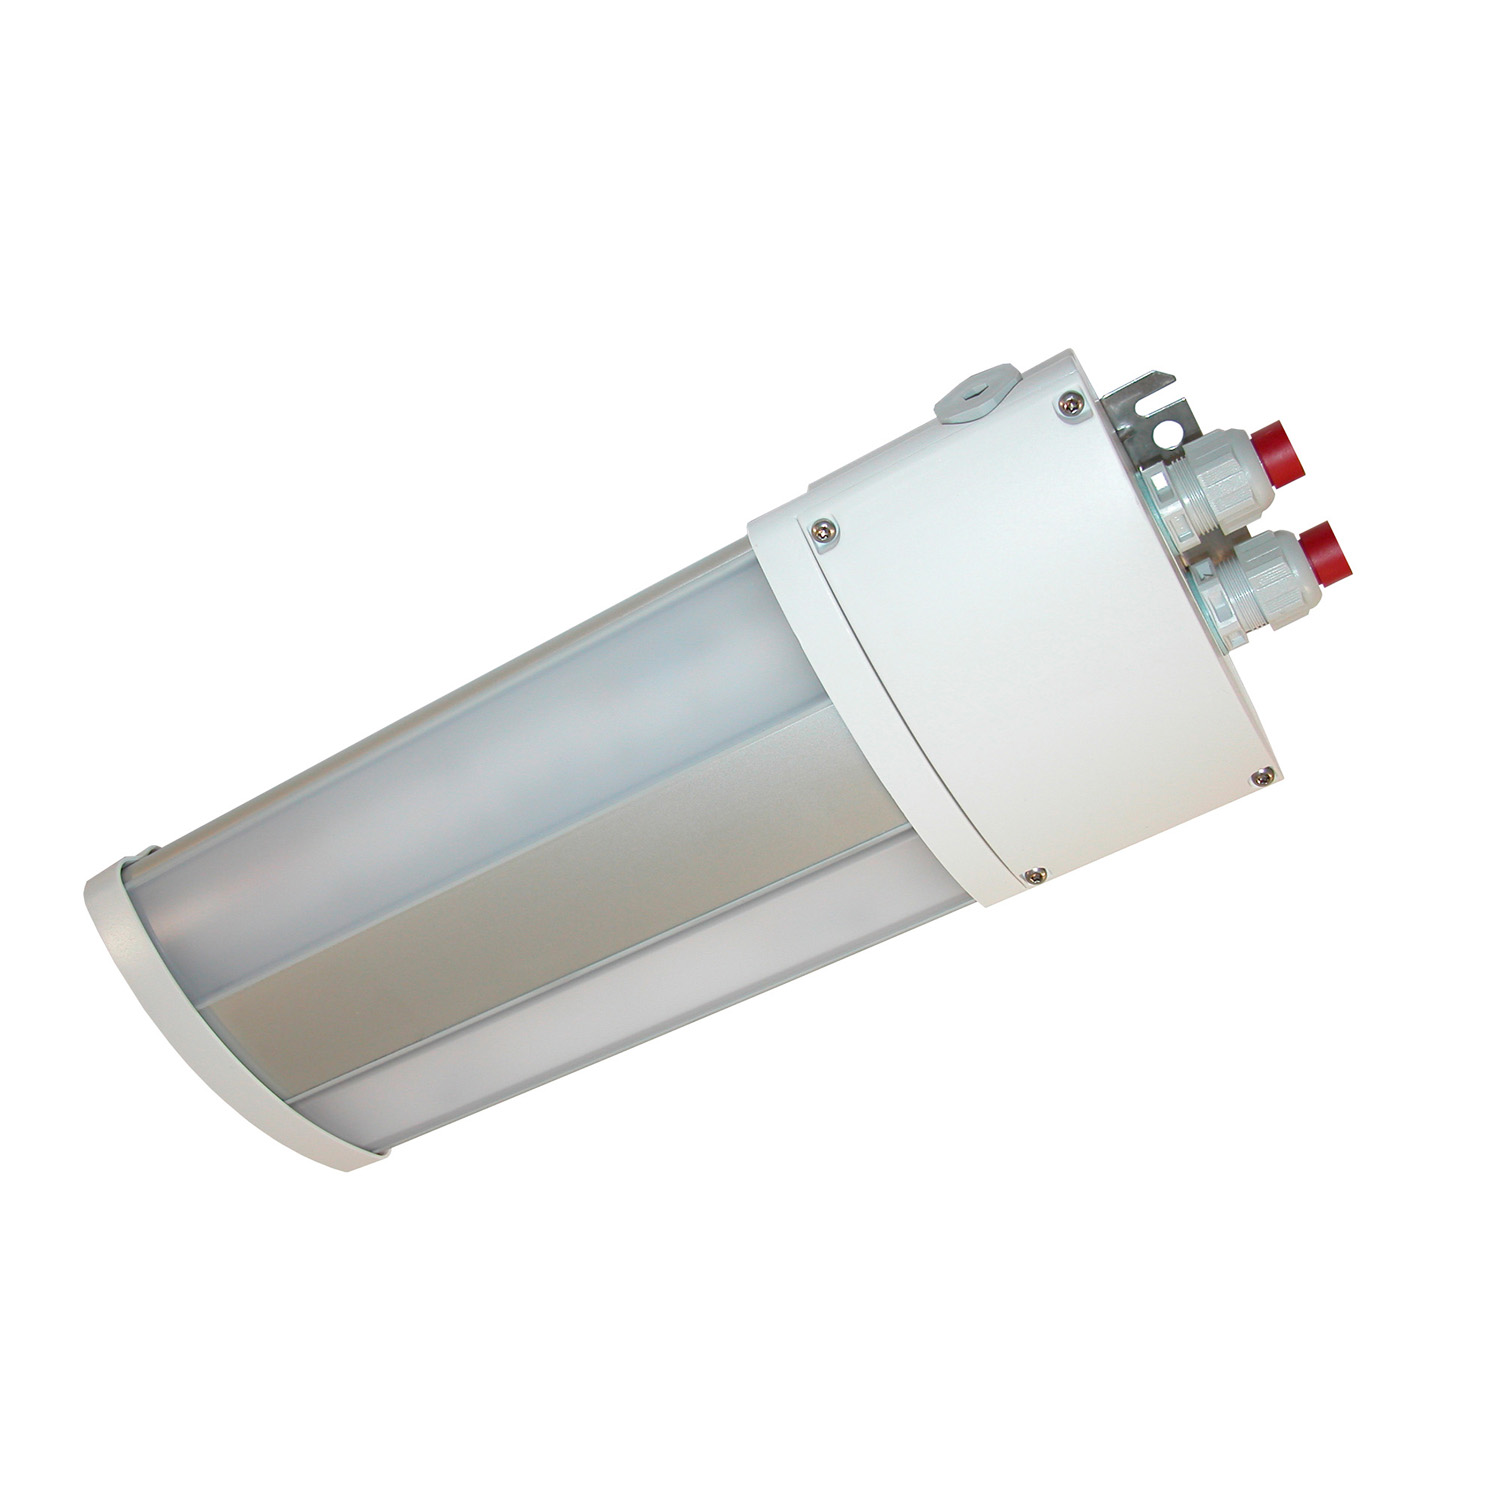 TL50024000 Watertight LED luminaire multipurpose, TL50 1000 840 220-240 M25 GL, 2X5W LED Short version